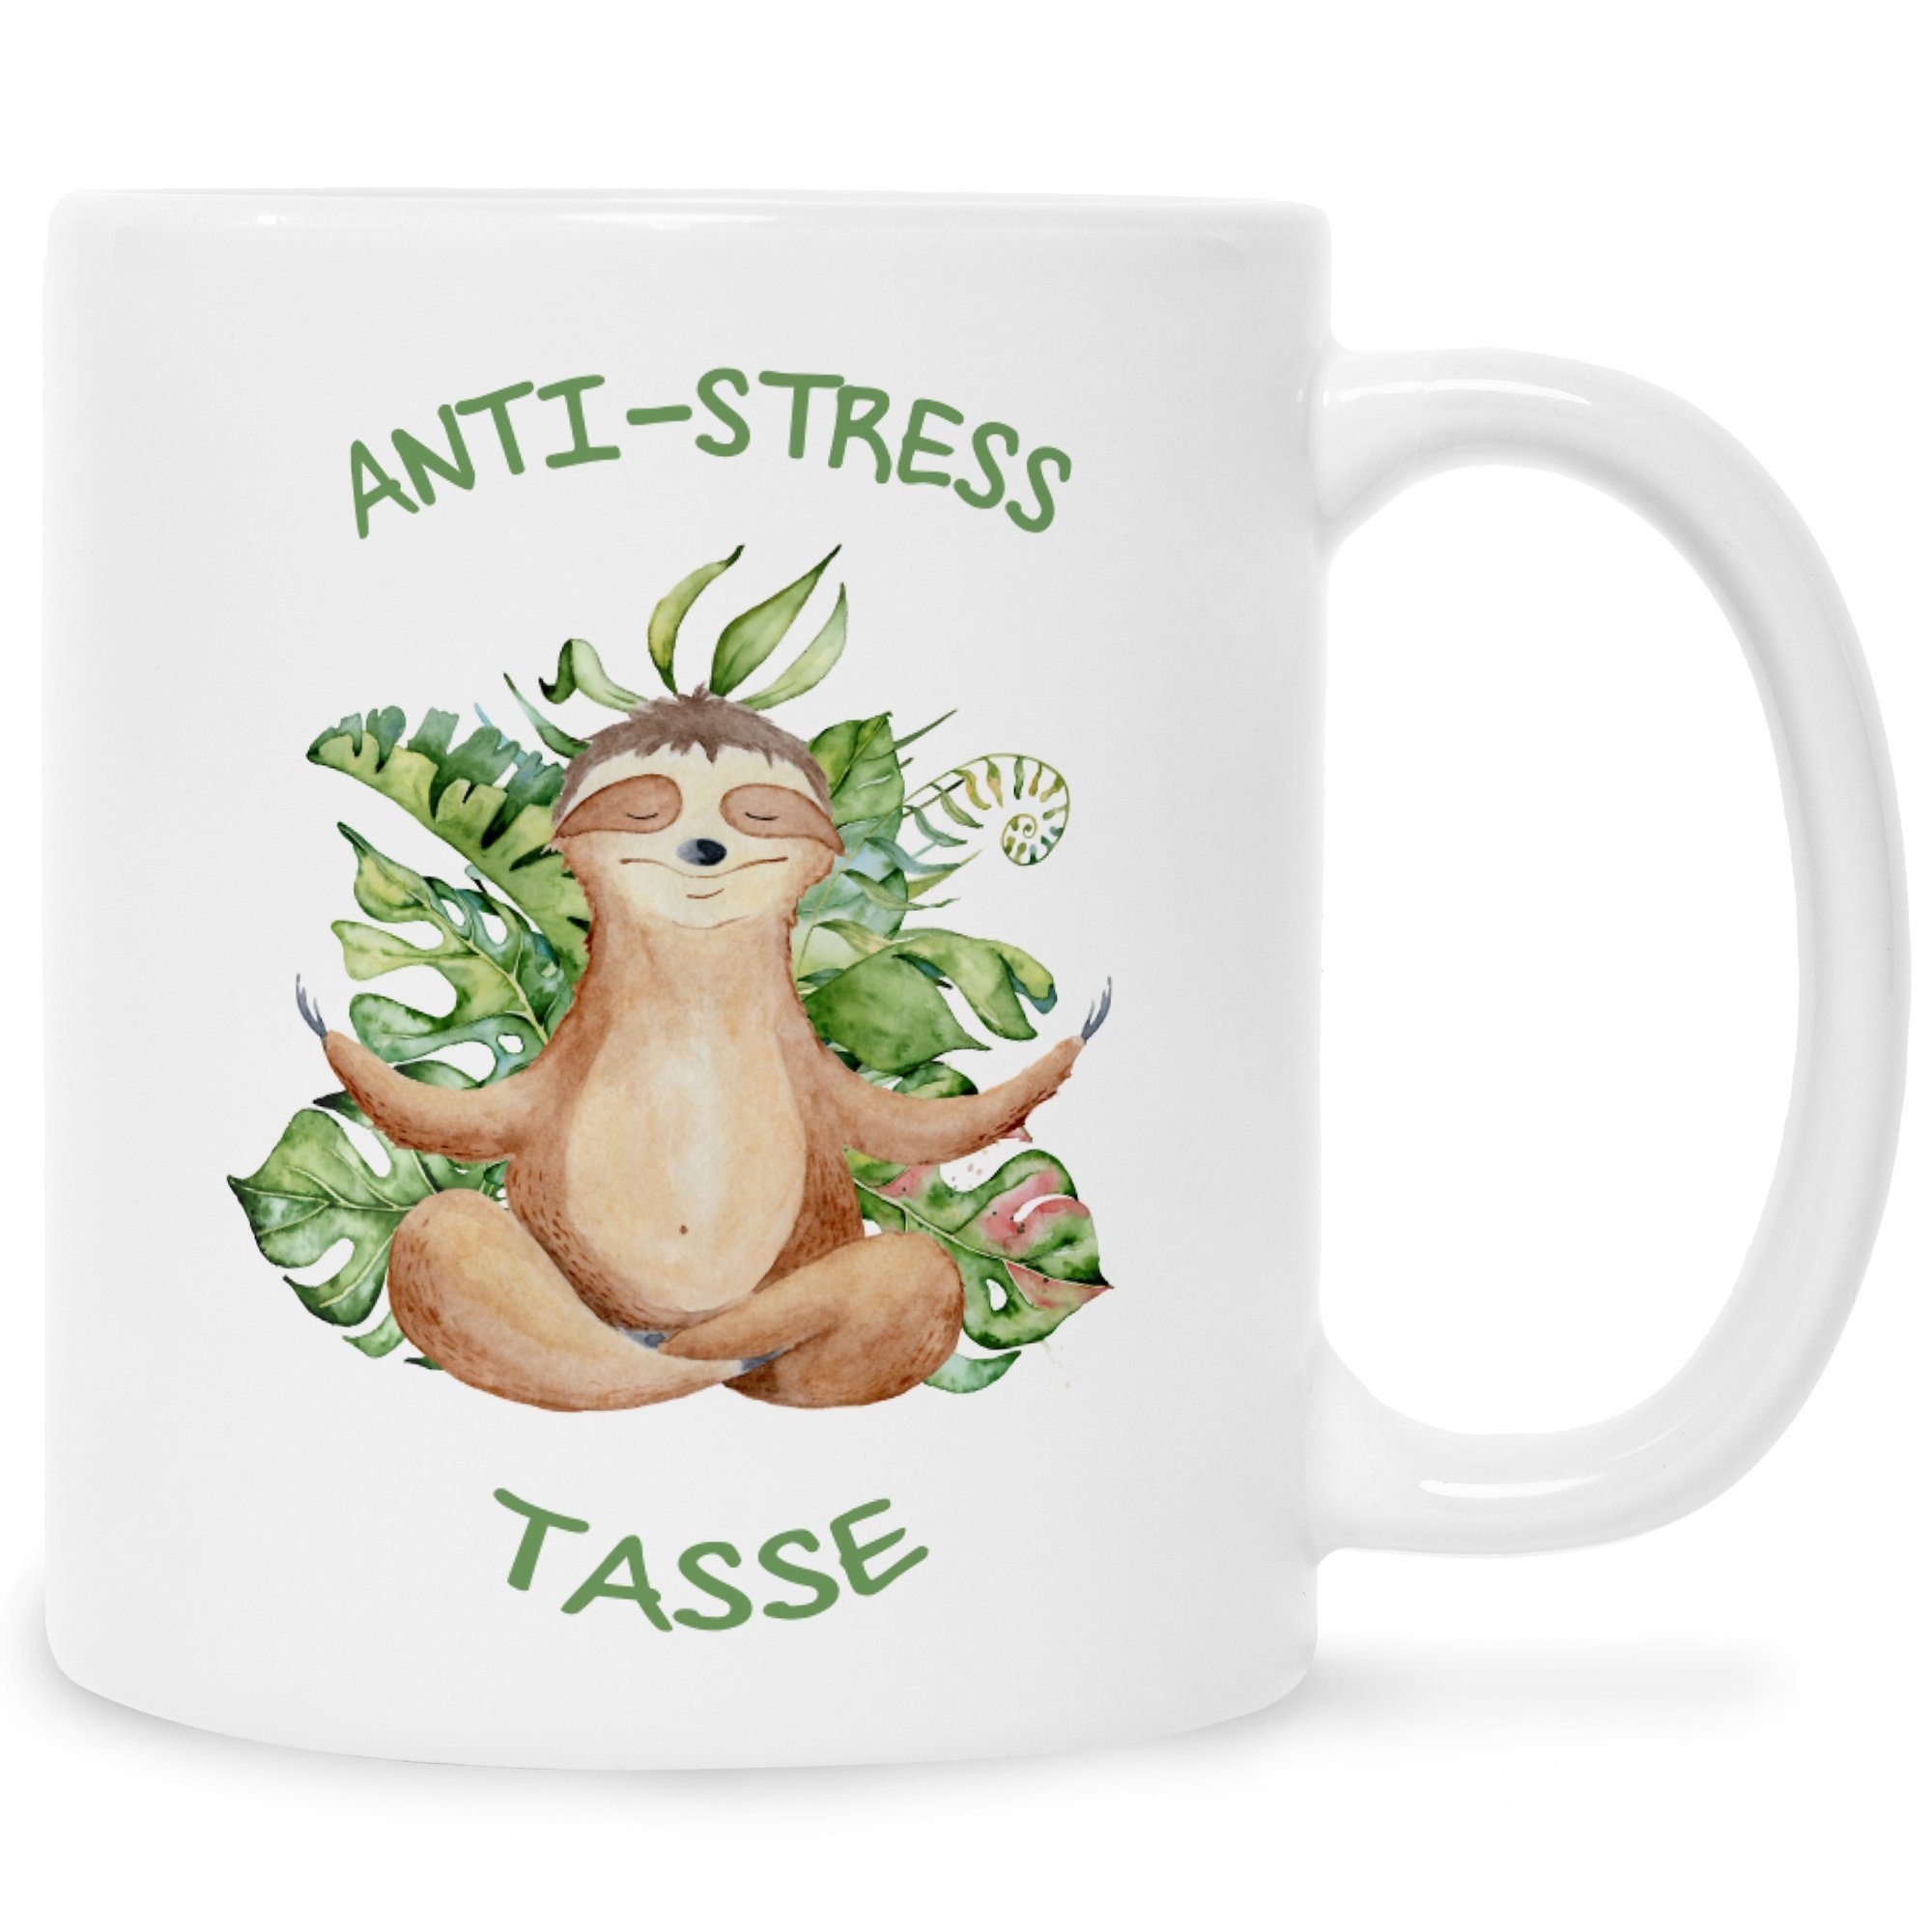 Weiß lustige Keramik, Ihn Faultiermotiv Spruchtasse - mit Tasse & Spruch mit Tasse, für Bedruckte GRAVURZEILE Anti-Stress Sie Tasse